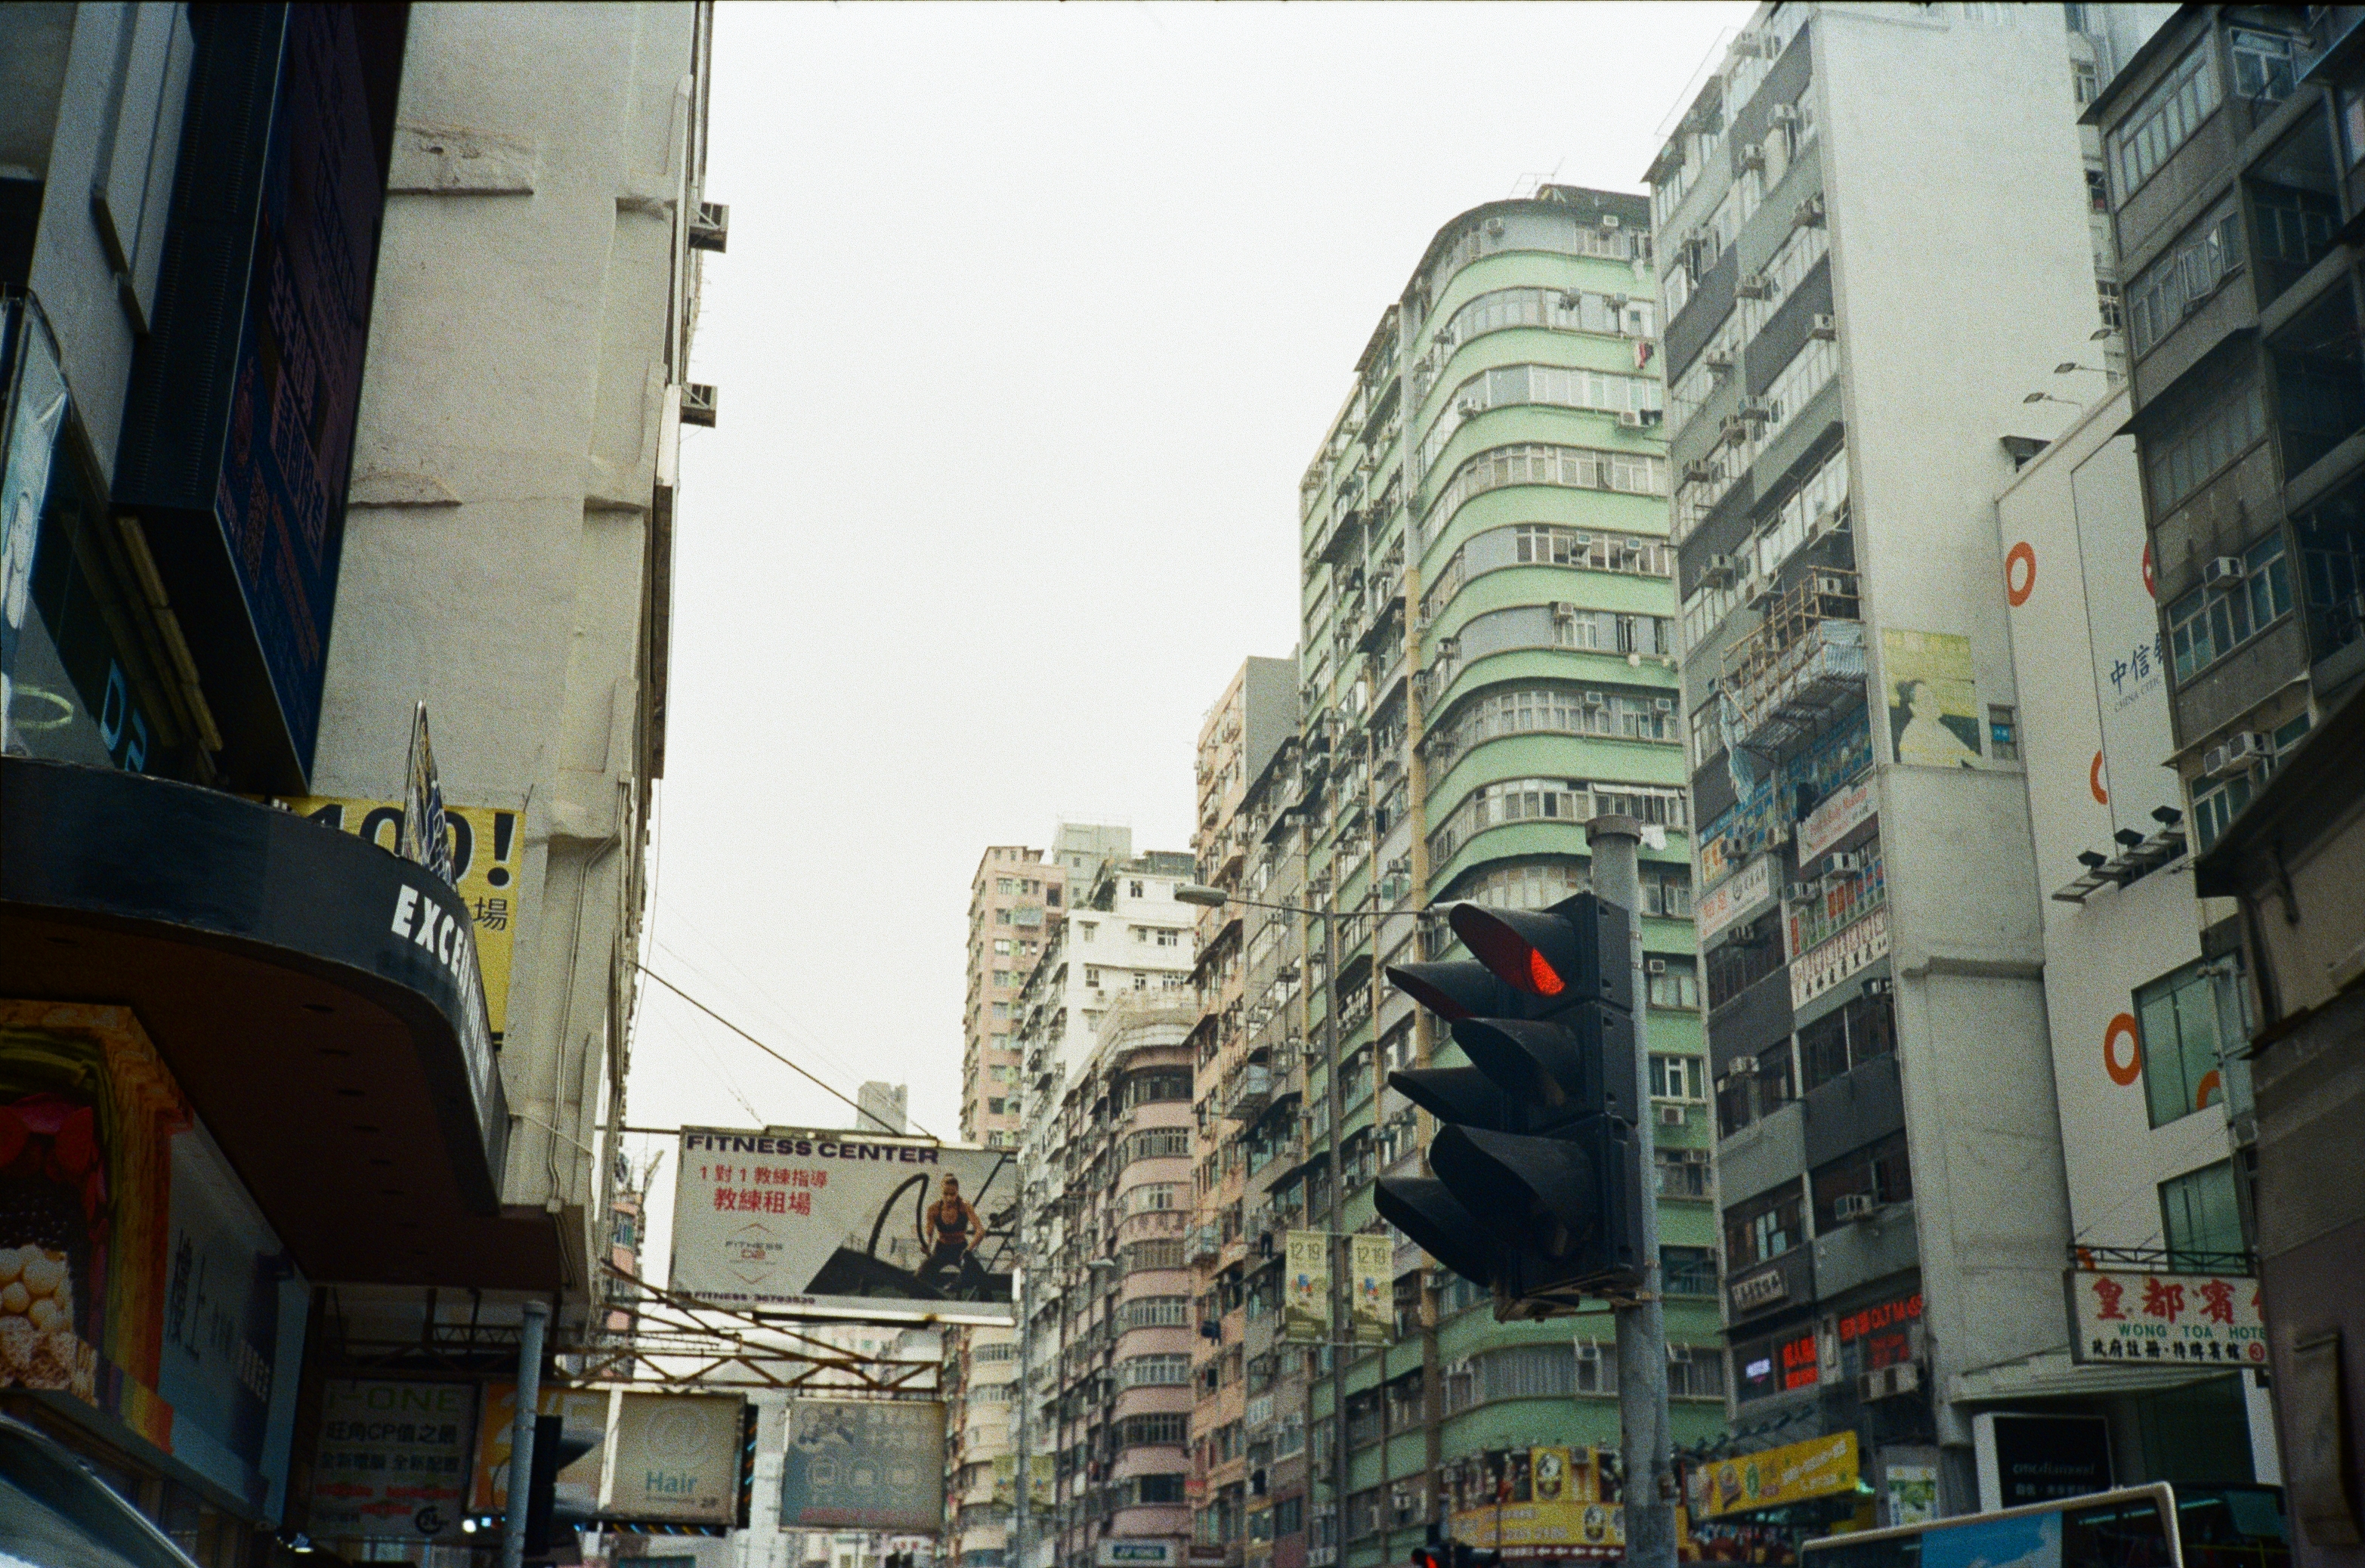 Old buildings in Mong Kok, Hong Kong.